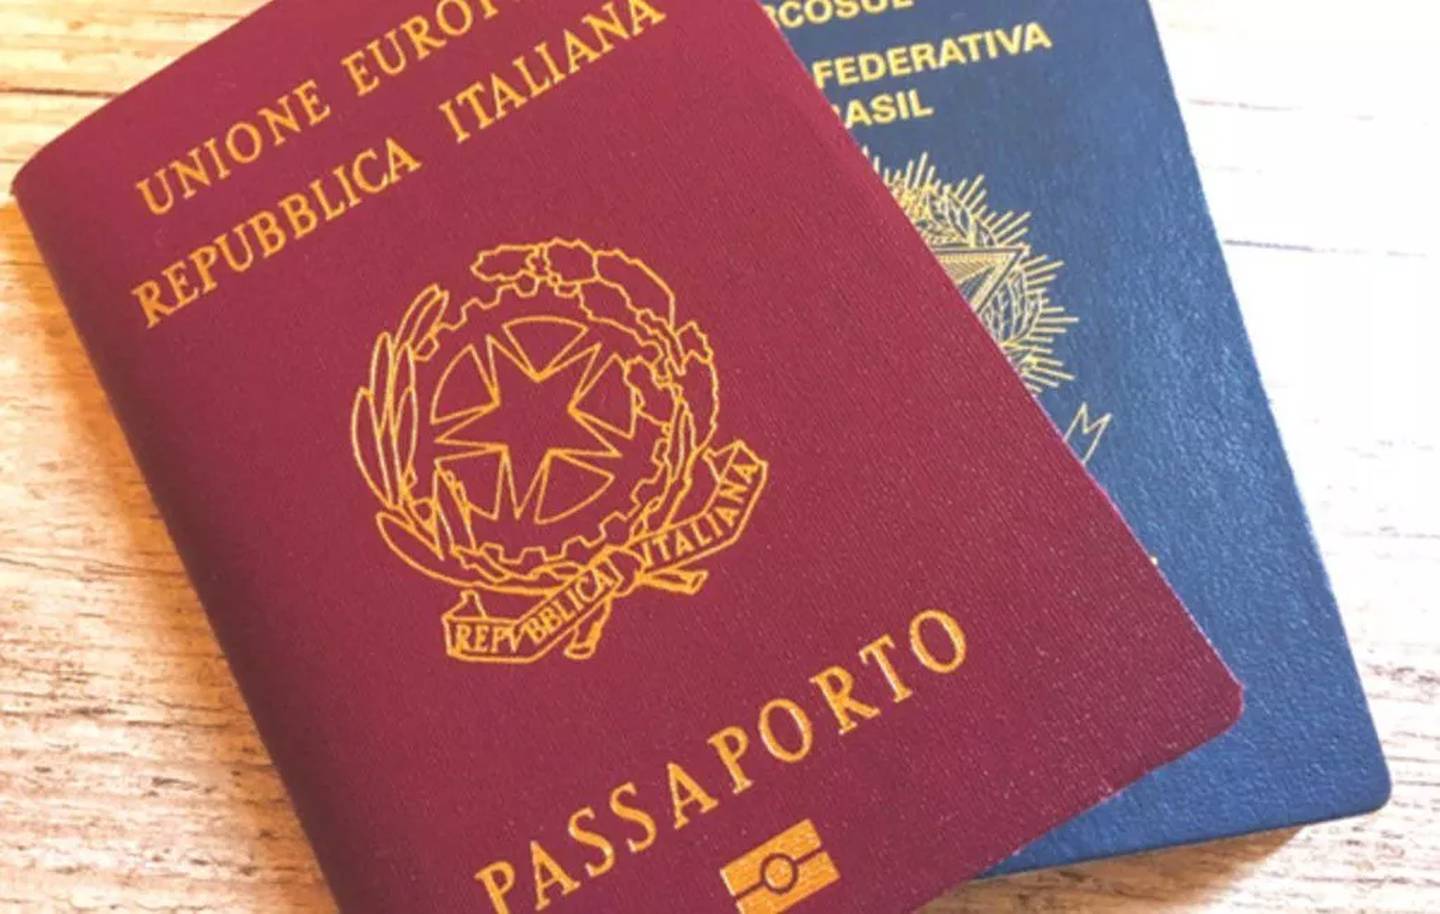 Itália ficou em 7º lugar no ranking mundial de passaportes com acesso direto a mais países no mundo; Brasil está em 19º lugar